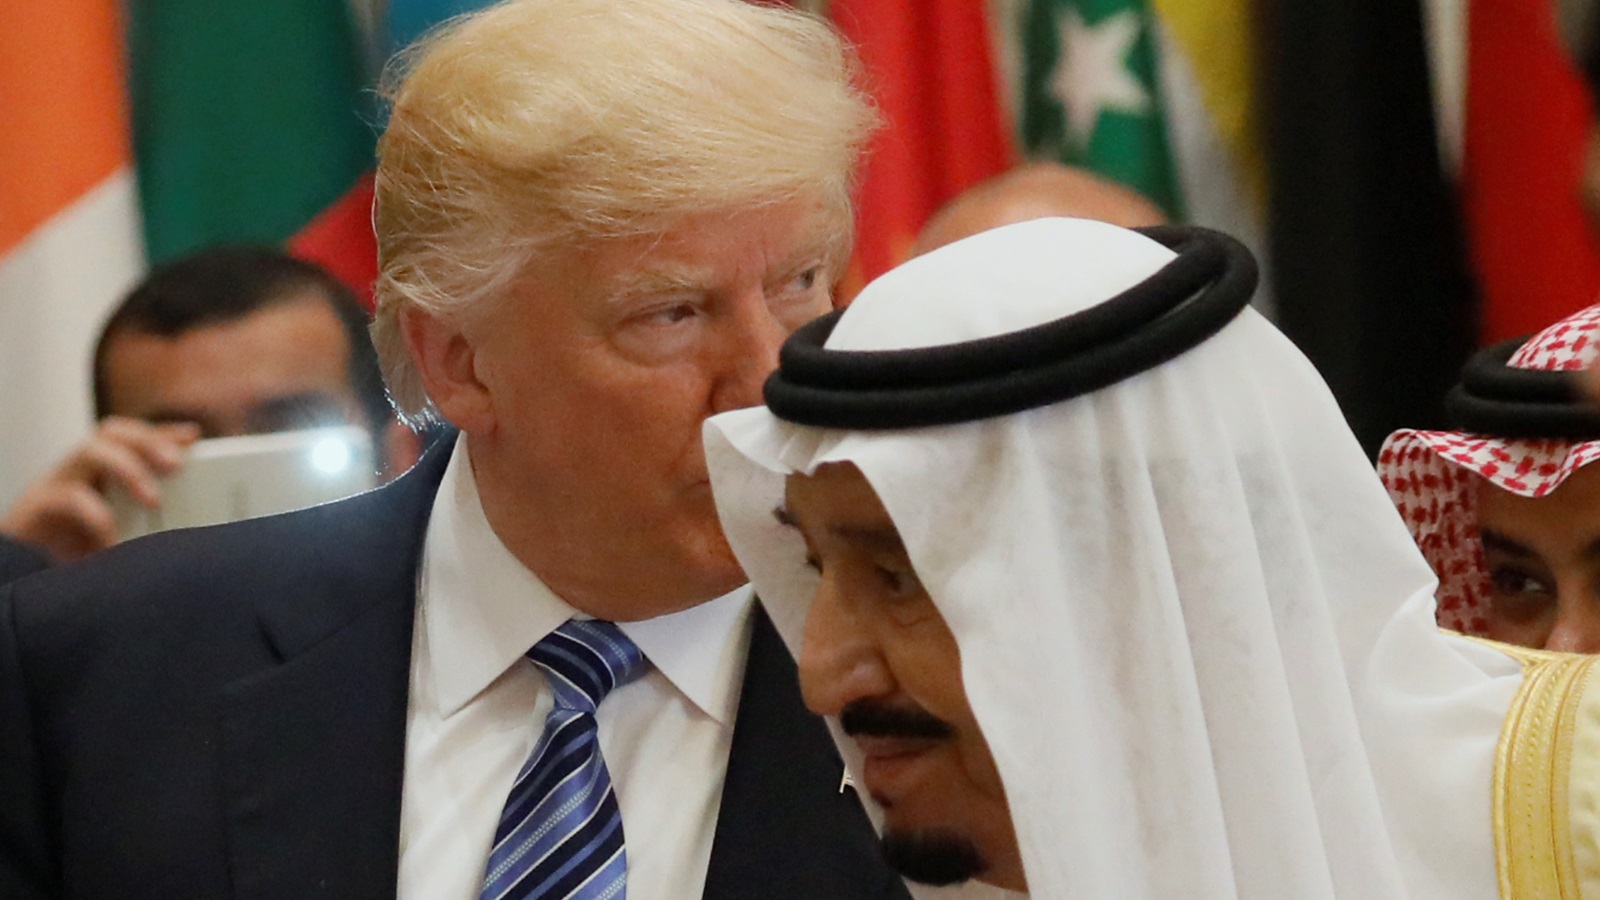 اللوم ينهال على البيت الأبيض باعتبار أن ساكنه يتحمل قسطا كبيرا من مسؤولية اندفاع القيادة الحالية للسعودية (رويترز) 